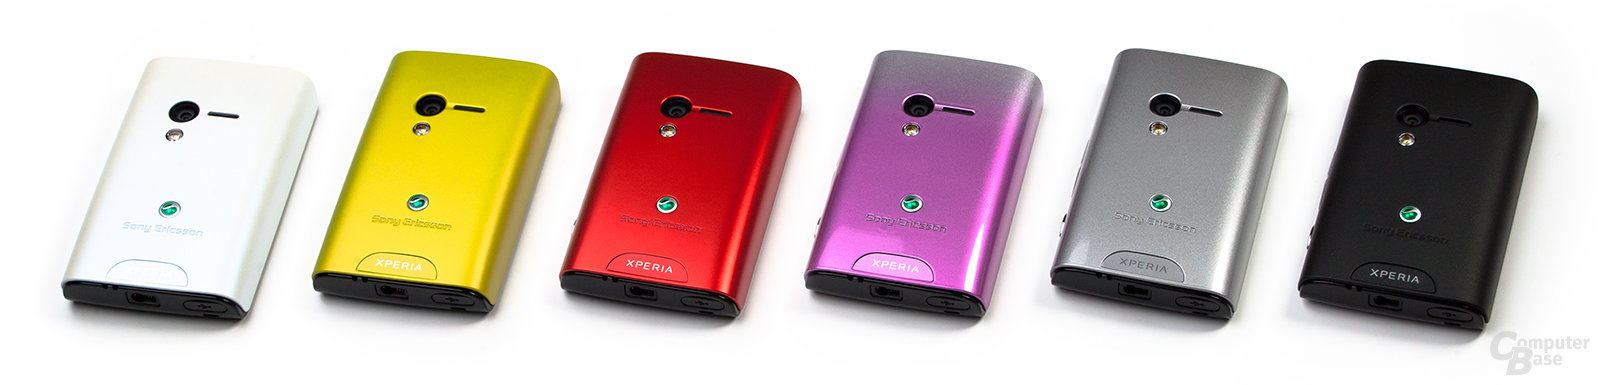 Xperia X10 mini: Farbvarianten der Rückseite